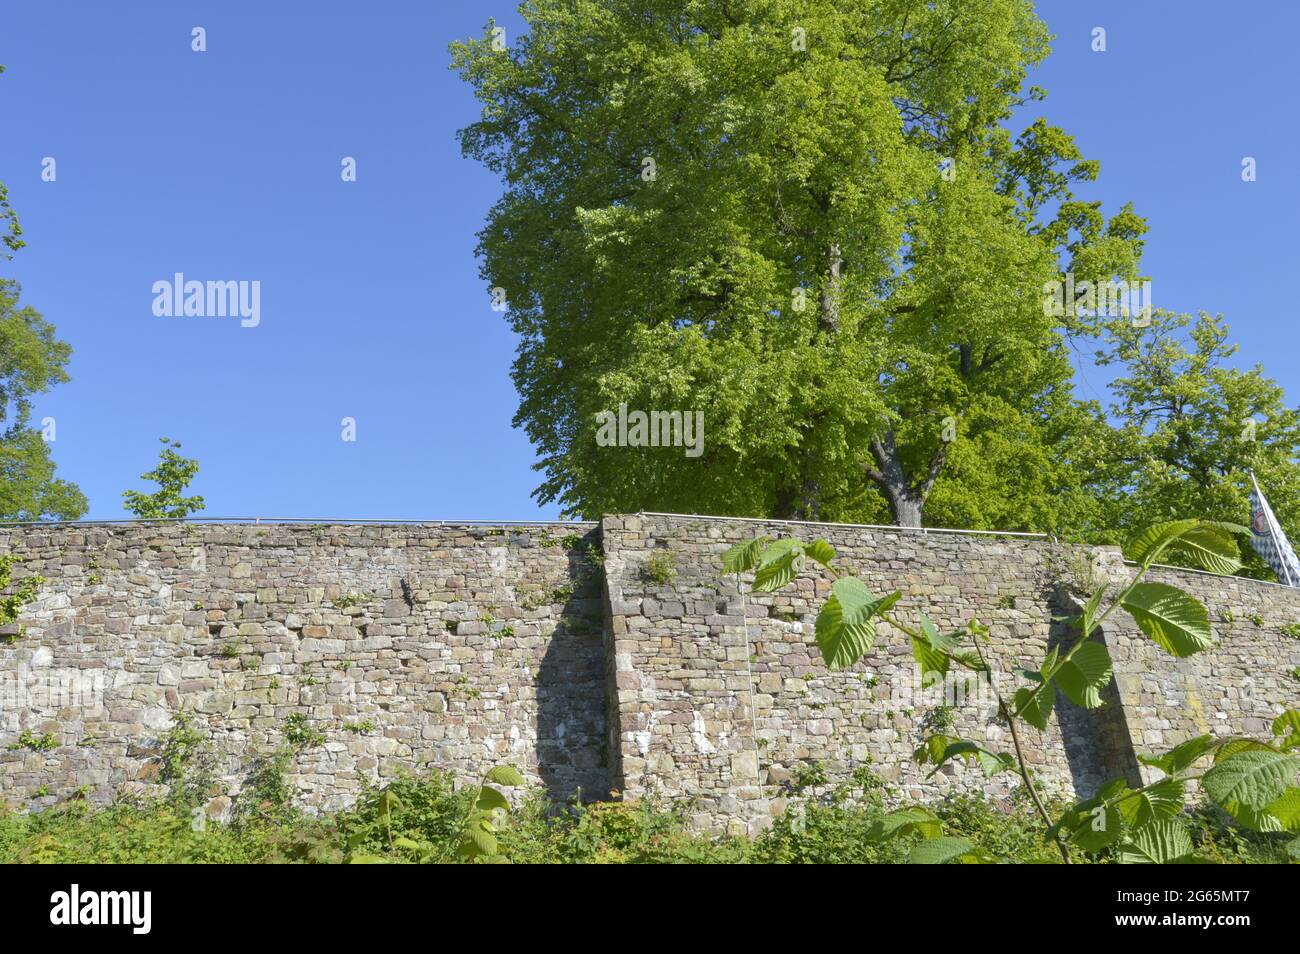 Medieval castle ruin in Vlotho, Germany Stock Photo